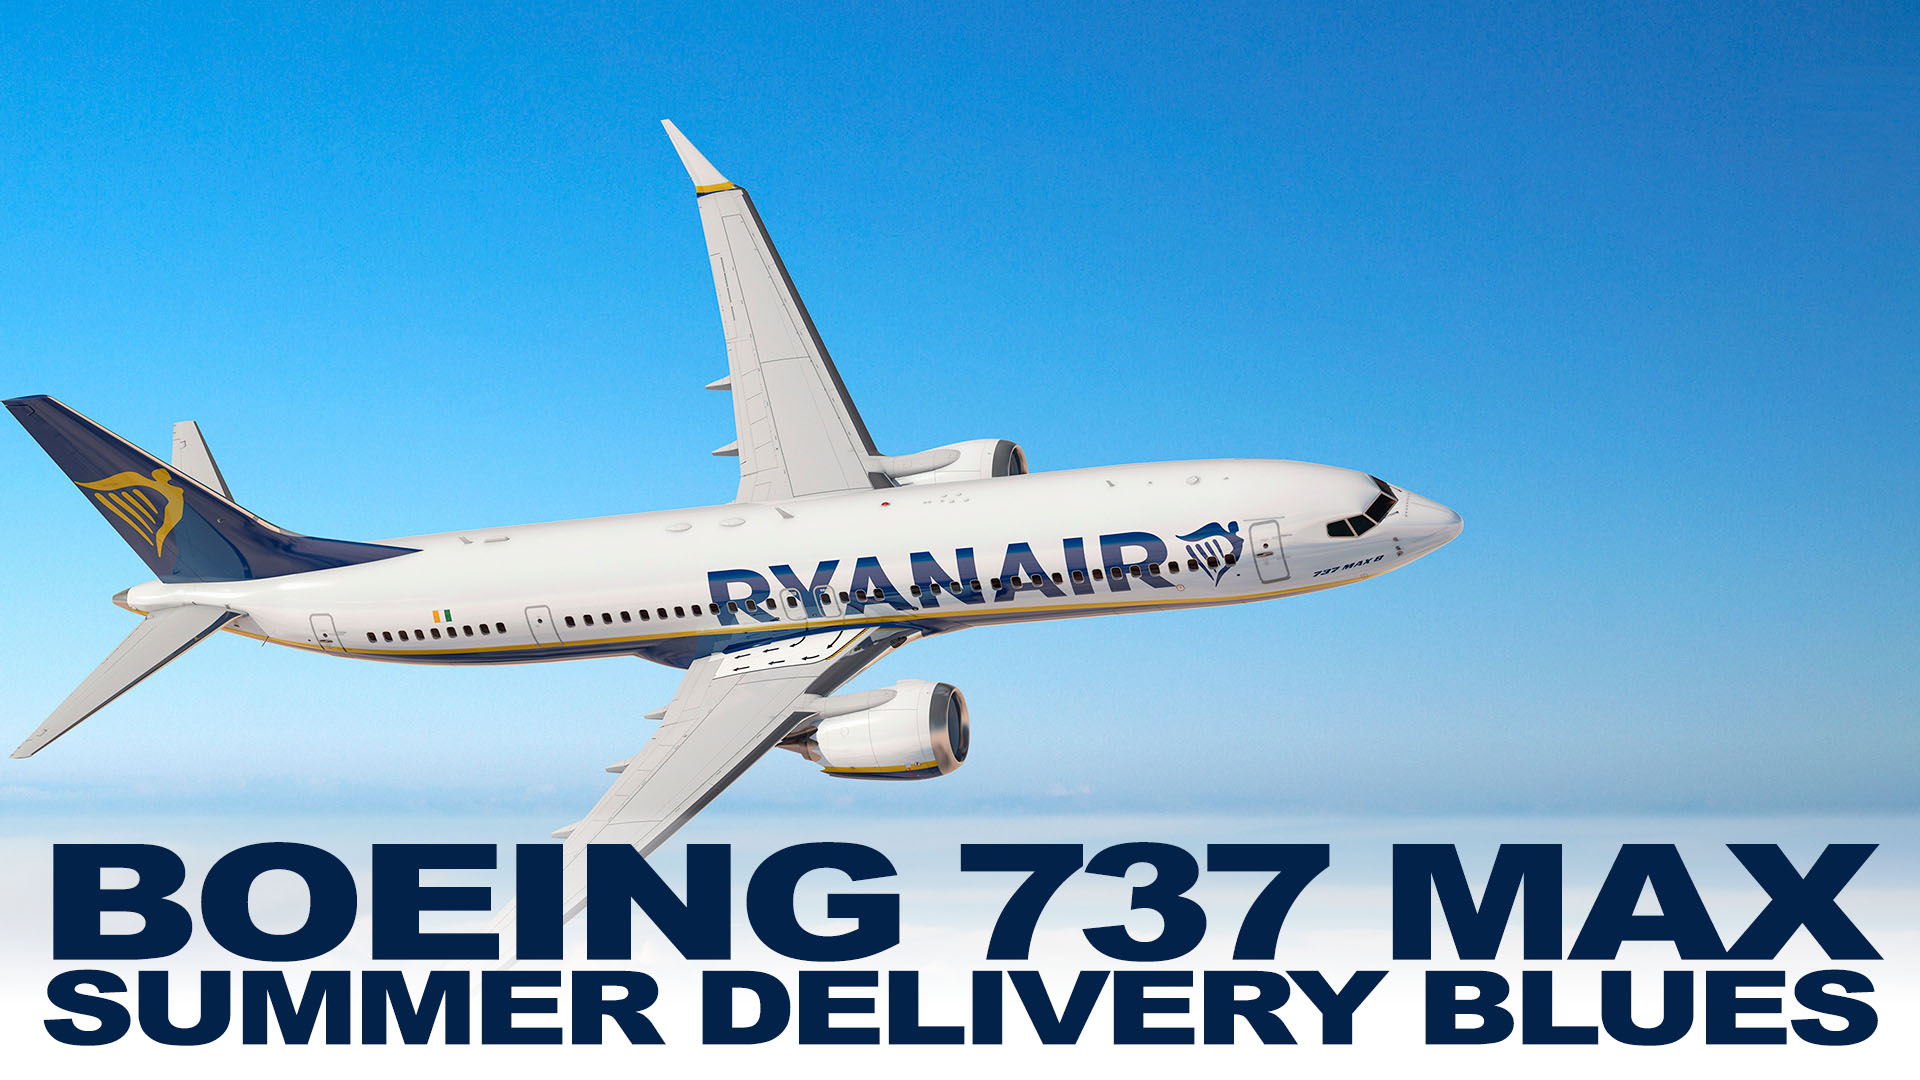 737 MAX Production Delivery Delay Ryanair 737 MAX